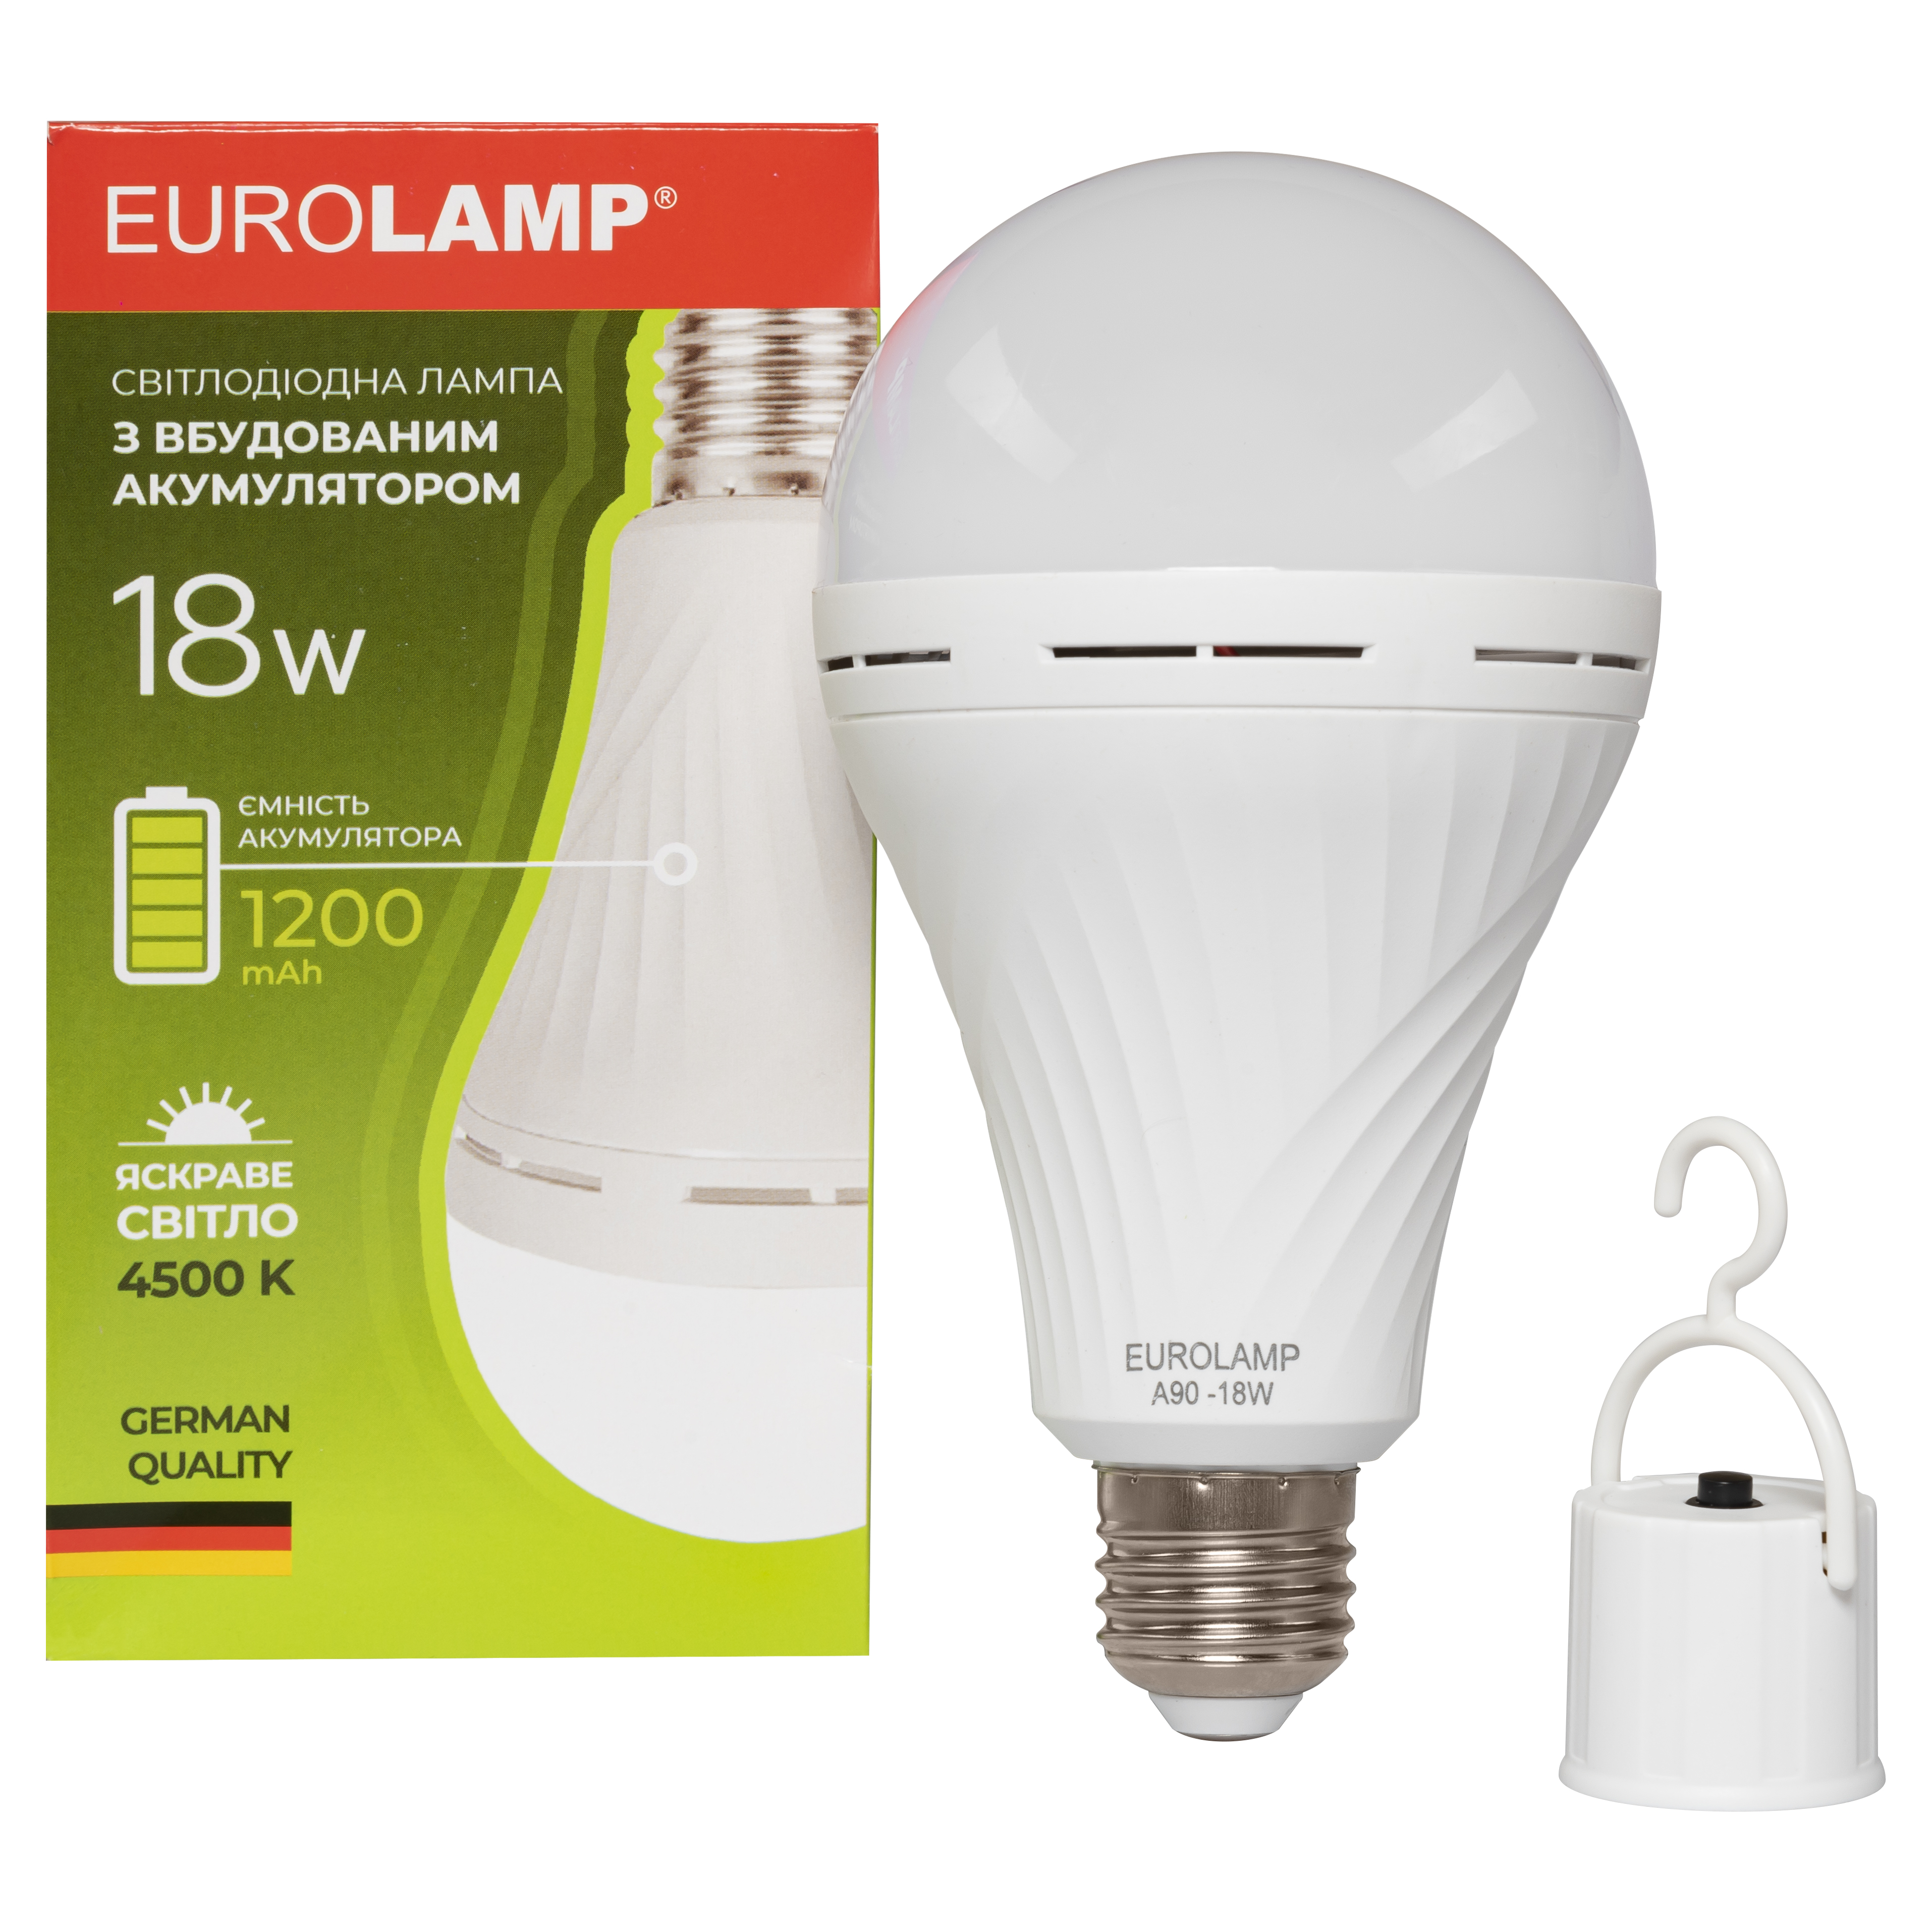 Цена светодиодная лампа форма груша Eurolamp A90 18W 4500K 220V E27 (LED-A90-18274(EM)) в Киеве